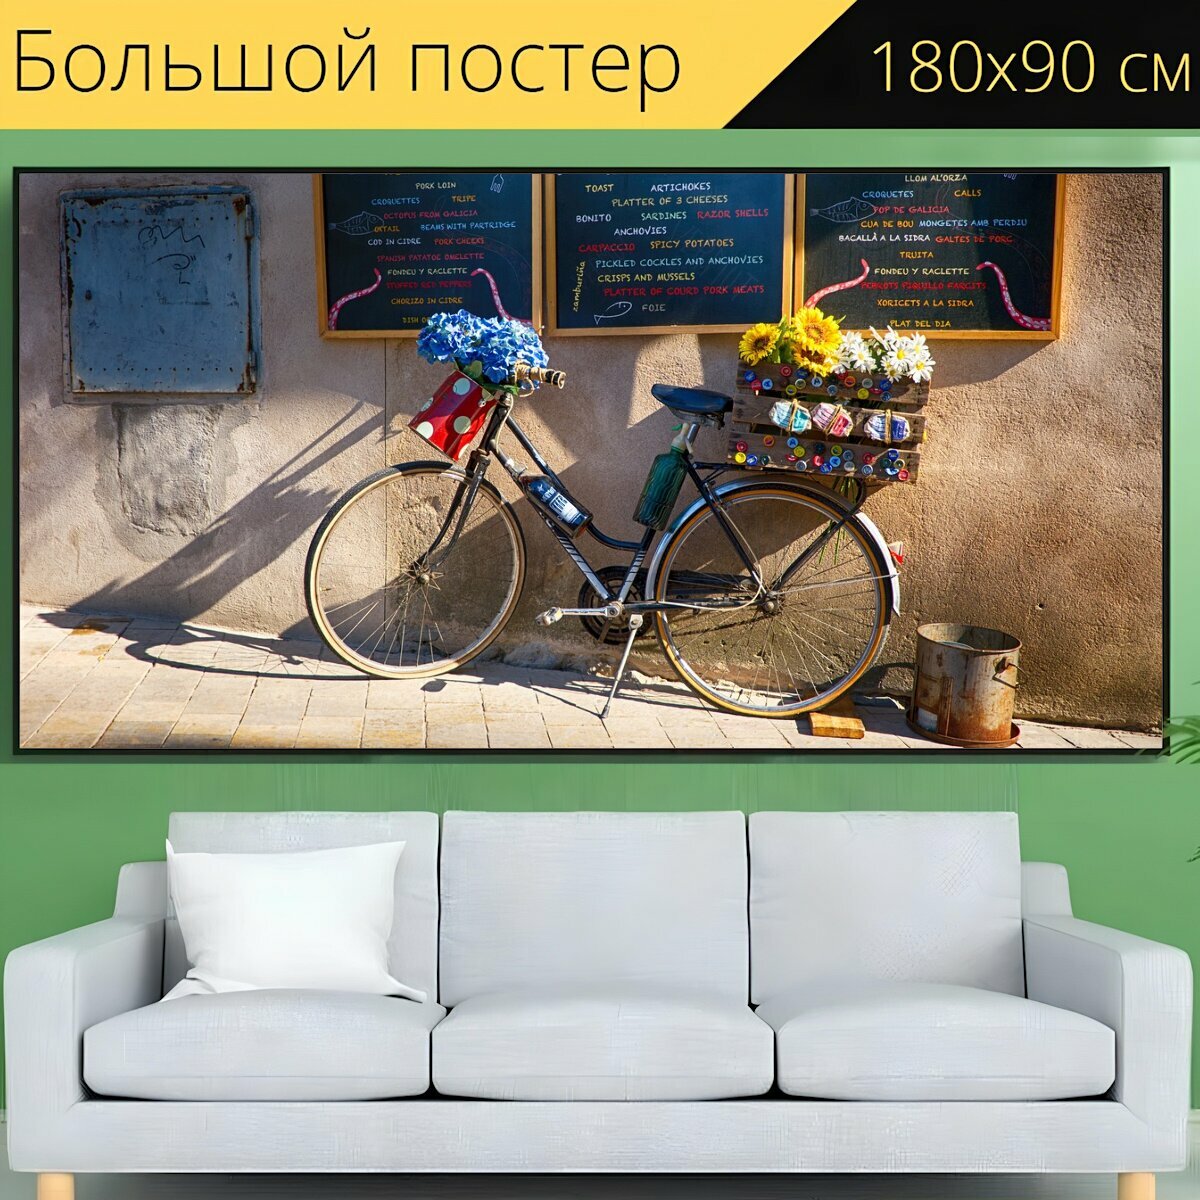 Большой постер "Велосипед, цветы, улица" 180 x 90 см. для интерьера